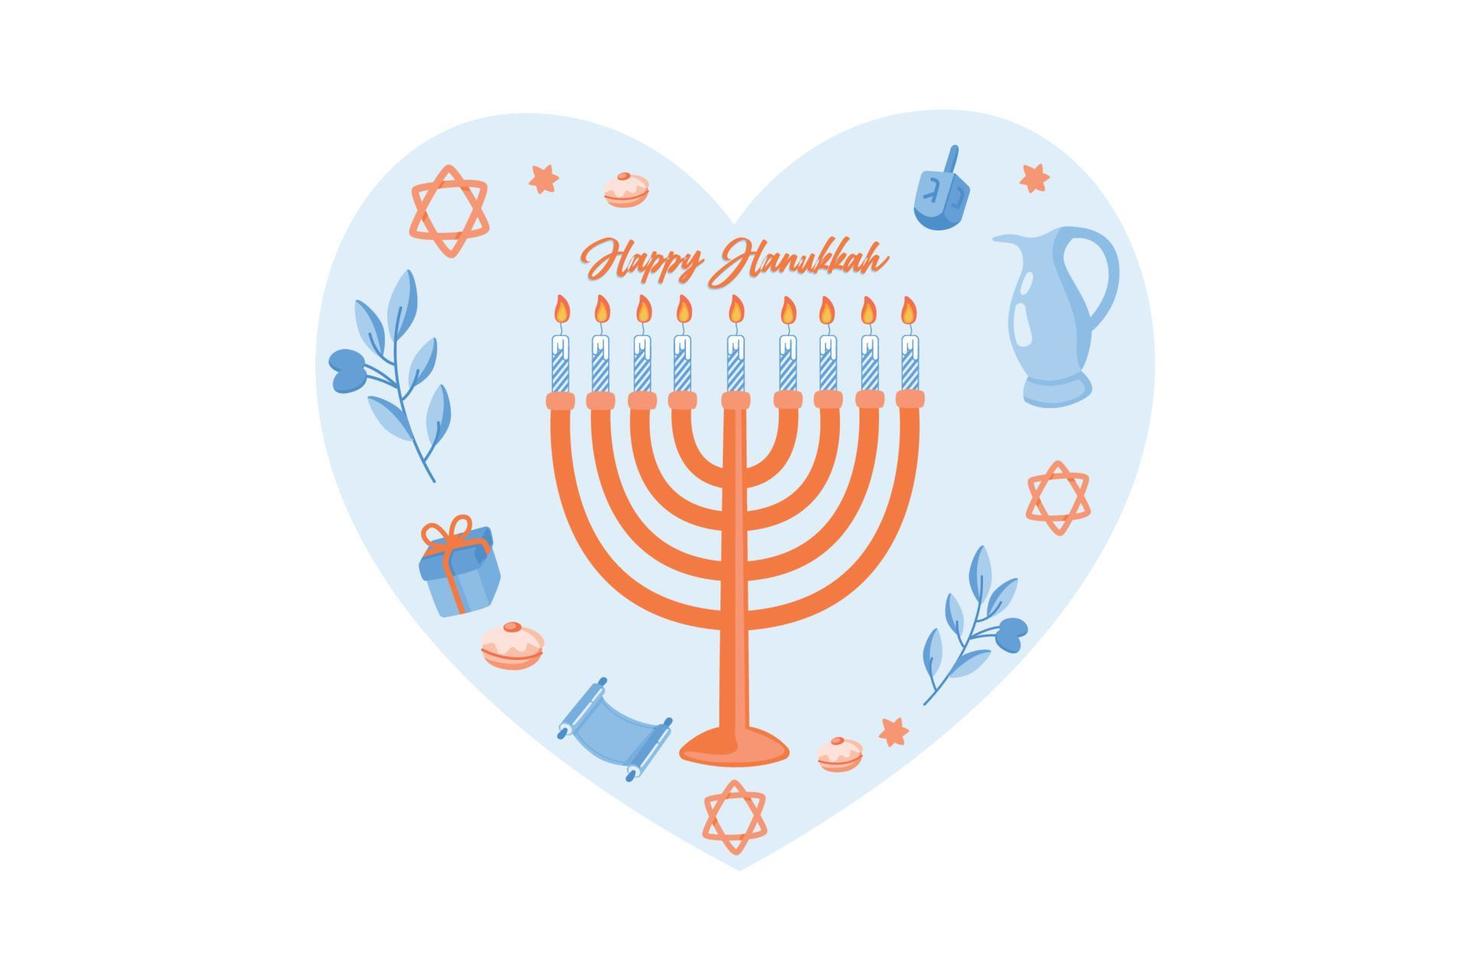 ilustrações vetoriais de símbolos famosos para o feriado judaico hanukkah, ilustração moderna de vetor plano